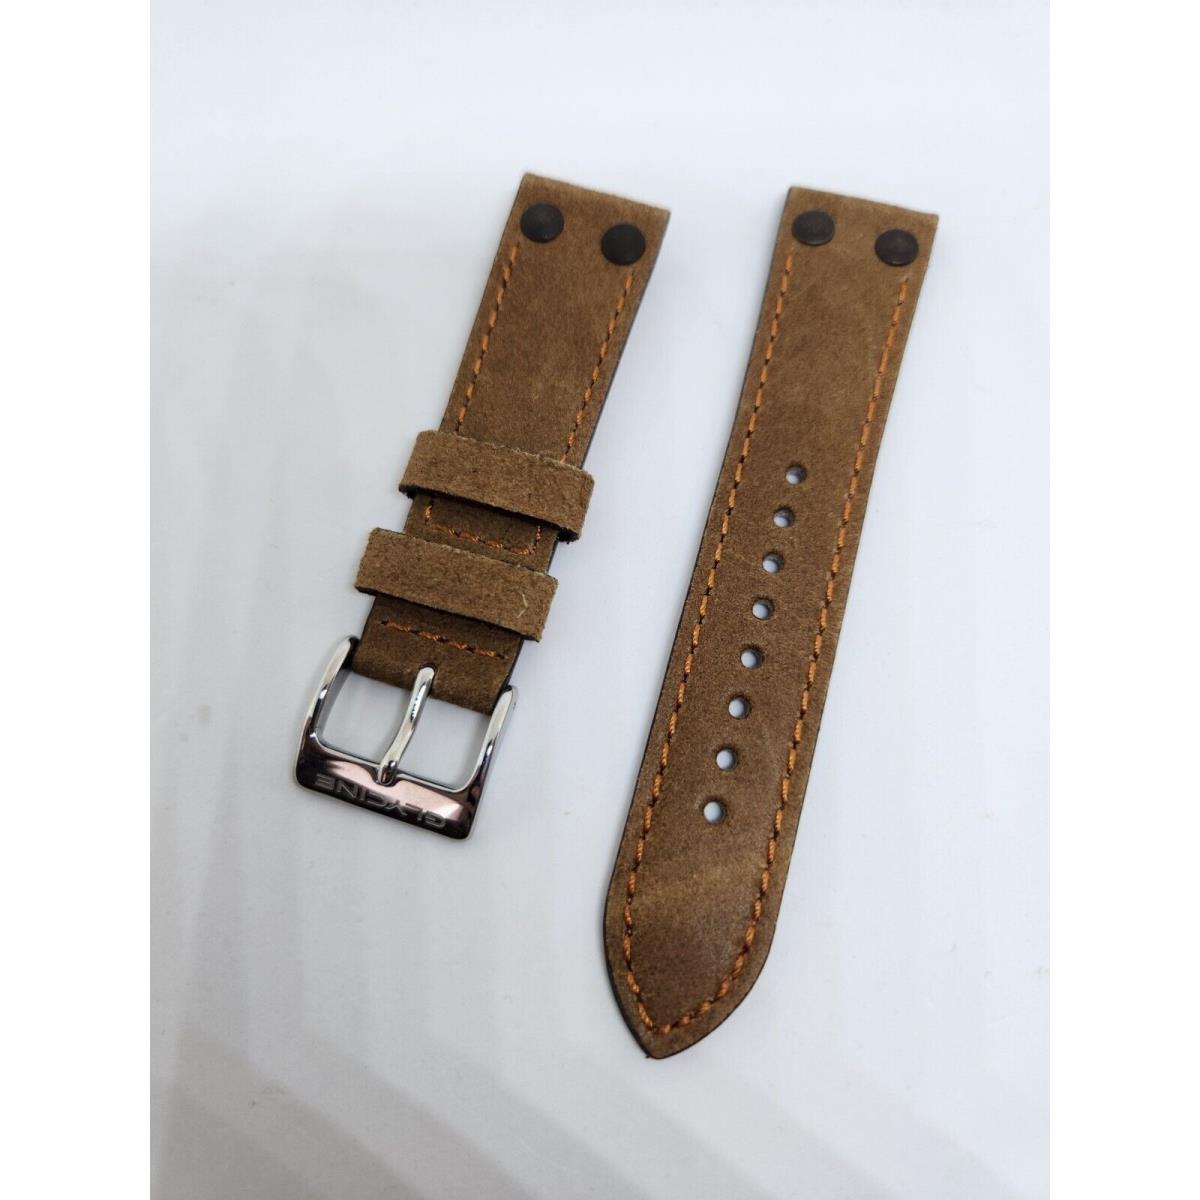 Oem Glycine F104 22mm Brown Leather Strap Band Bracelet For Model GL0125 Etc